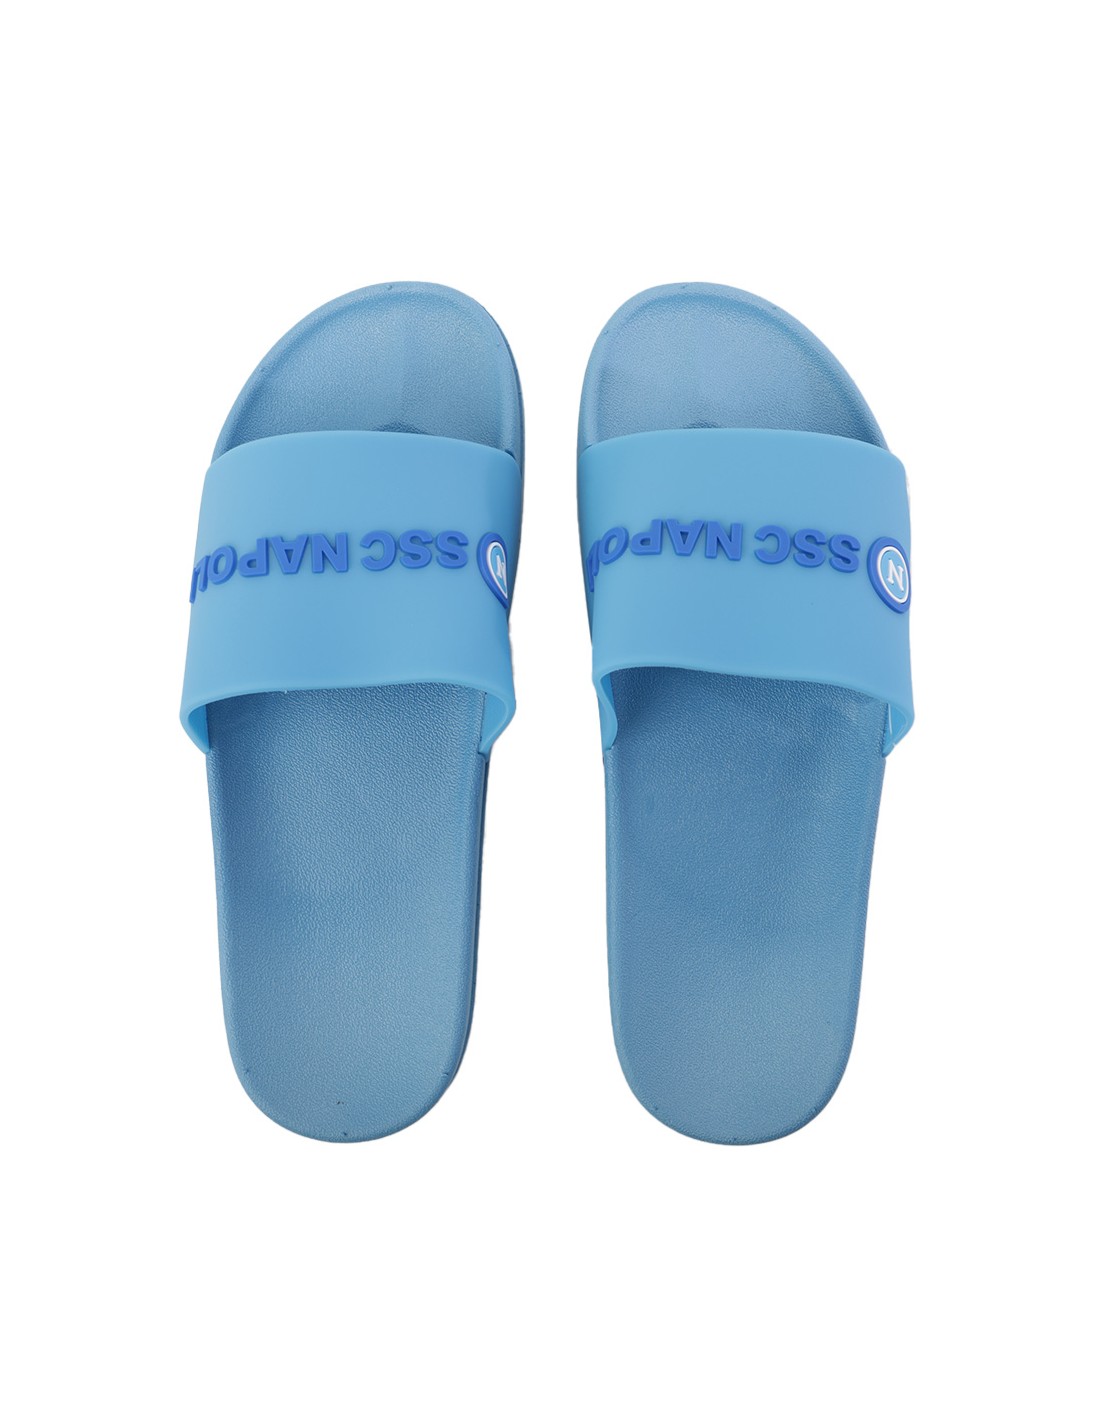 Light blue napoli slippers